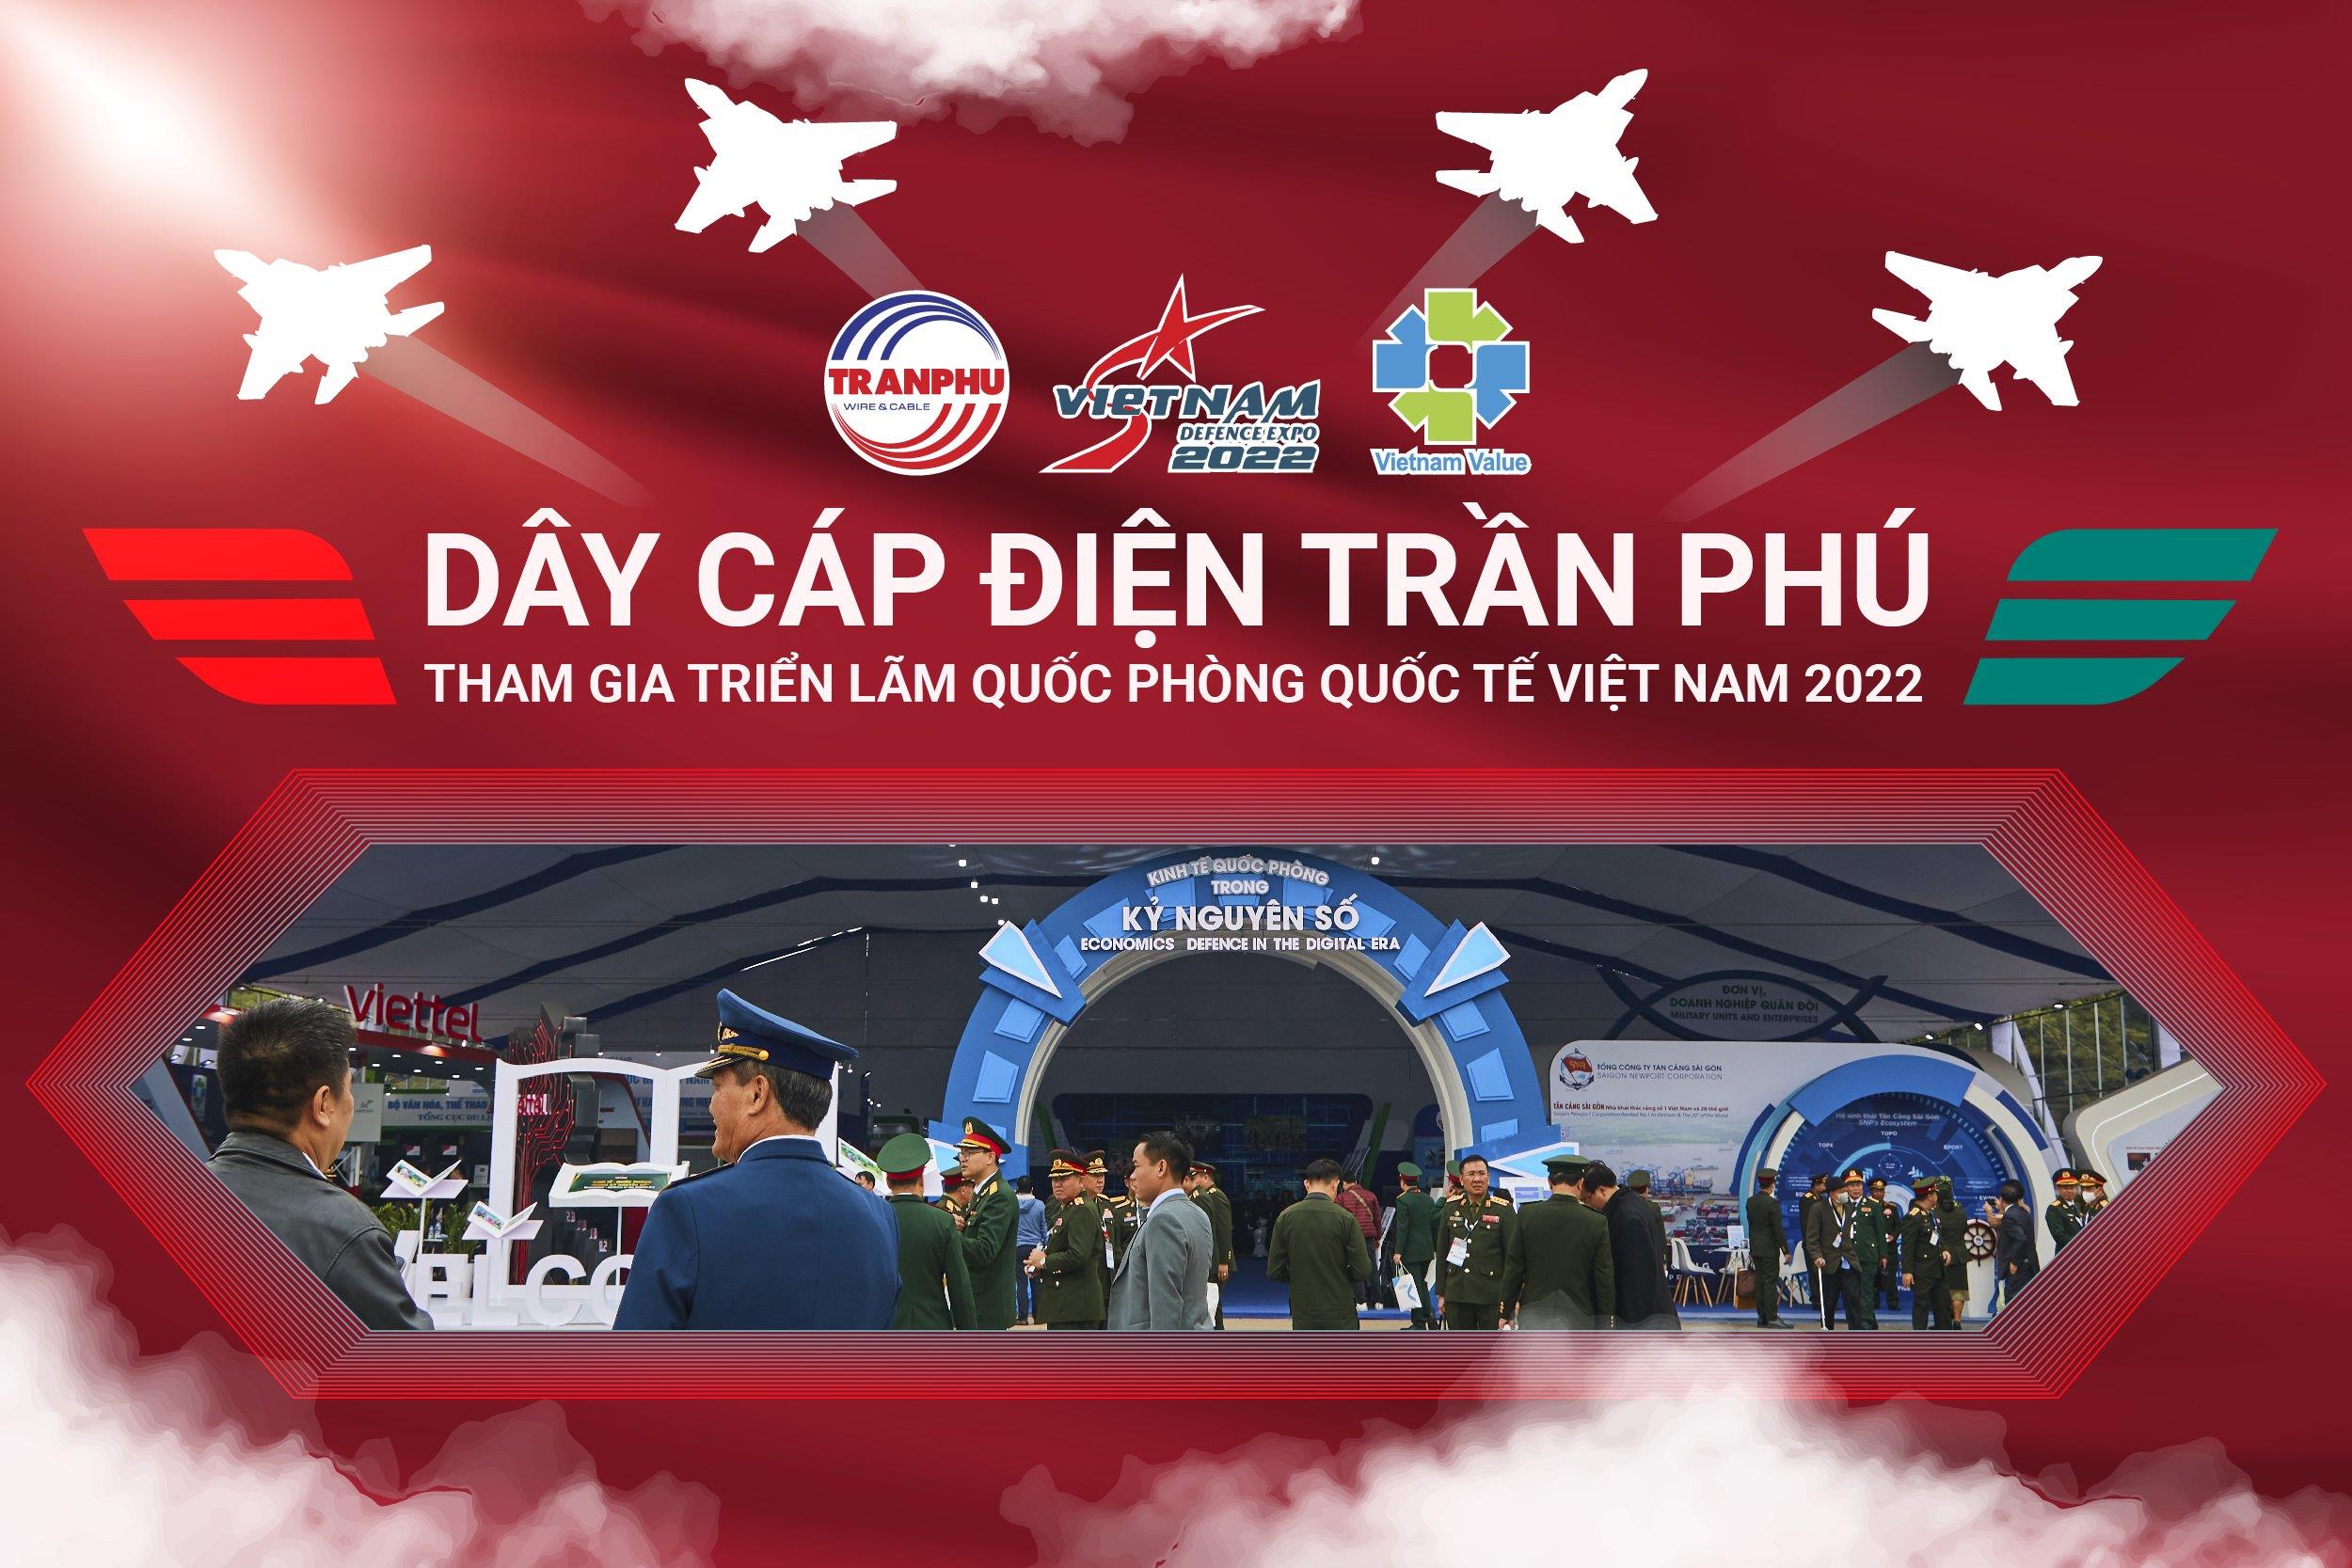 Dây cáp điện Trần Phú tại Triển lãm Quốc phòng quốc tế Việt Nam 2022